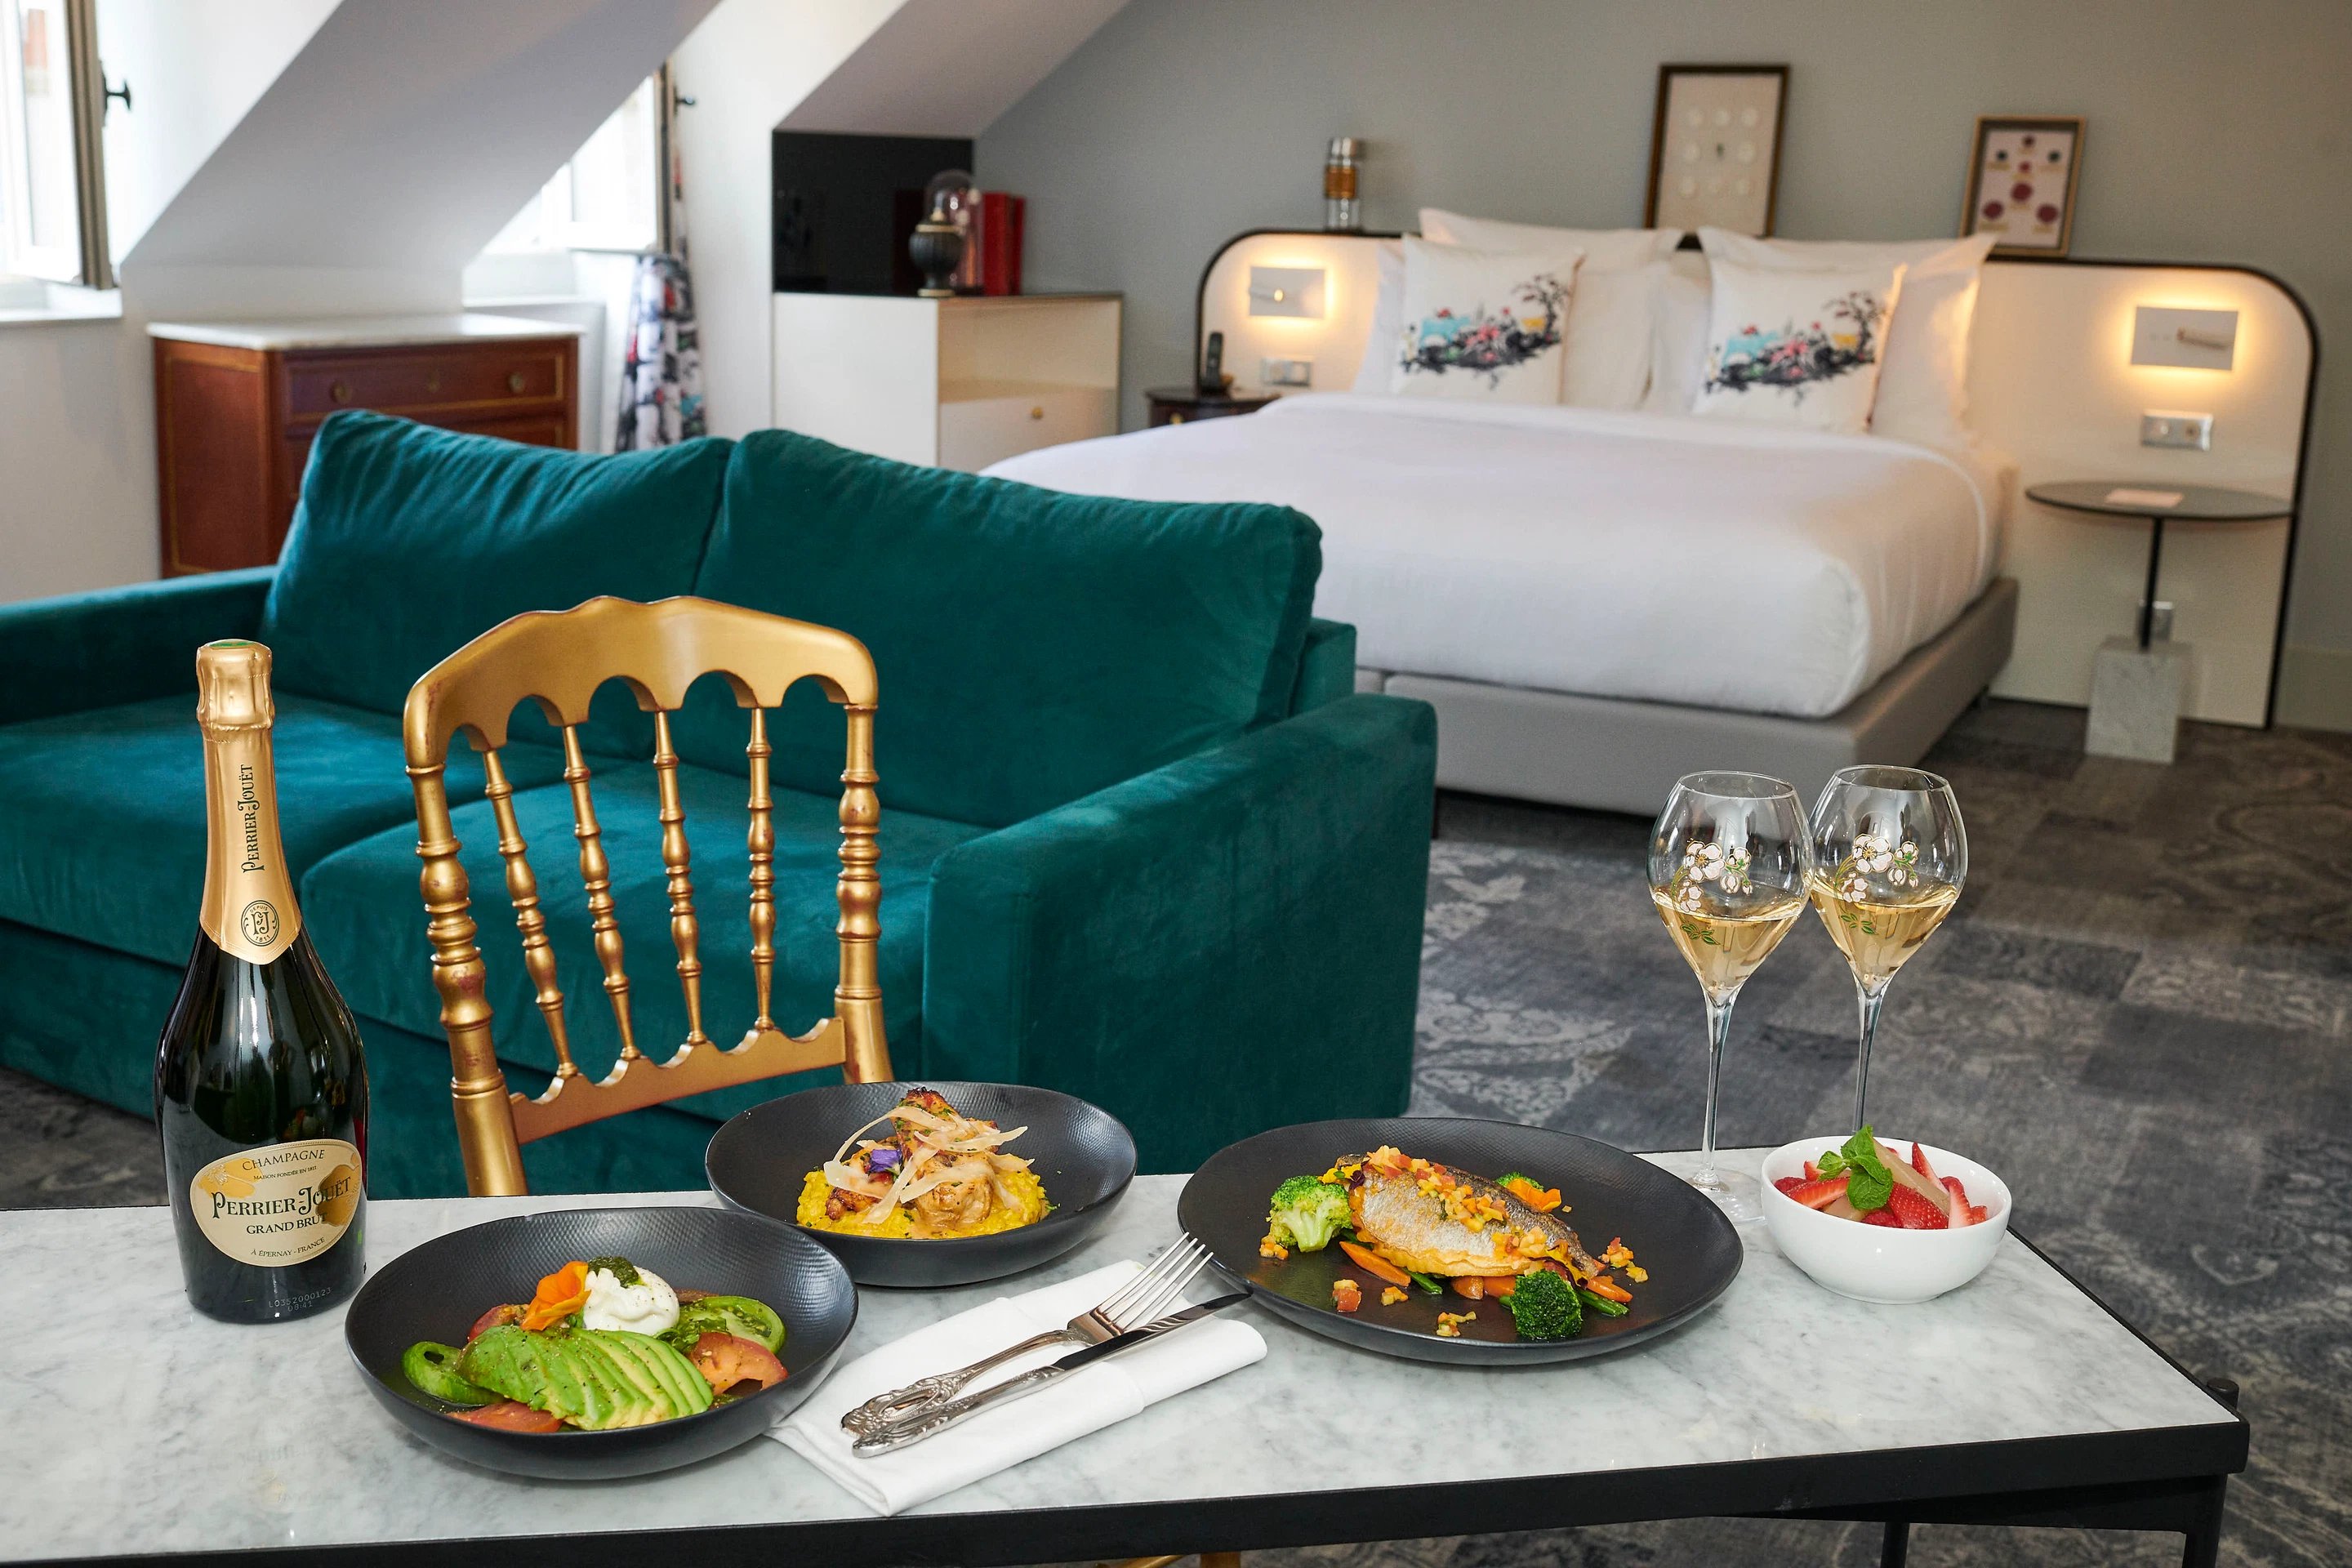 Normandy Hôtel Le Chantier - Afterworks Suite - Room service